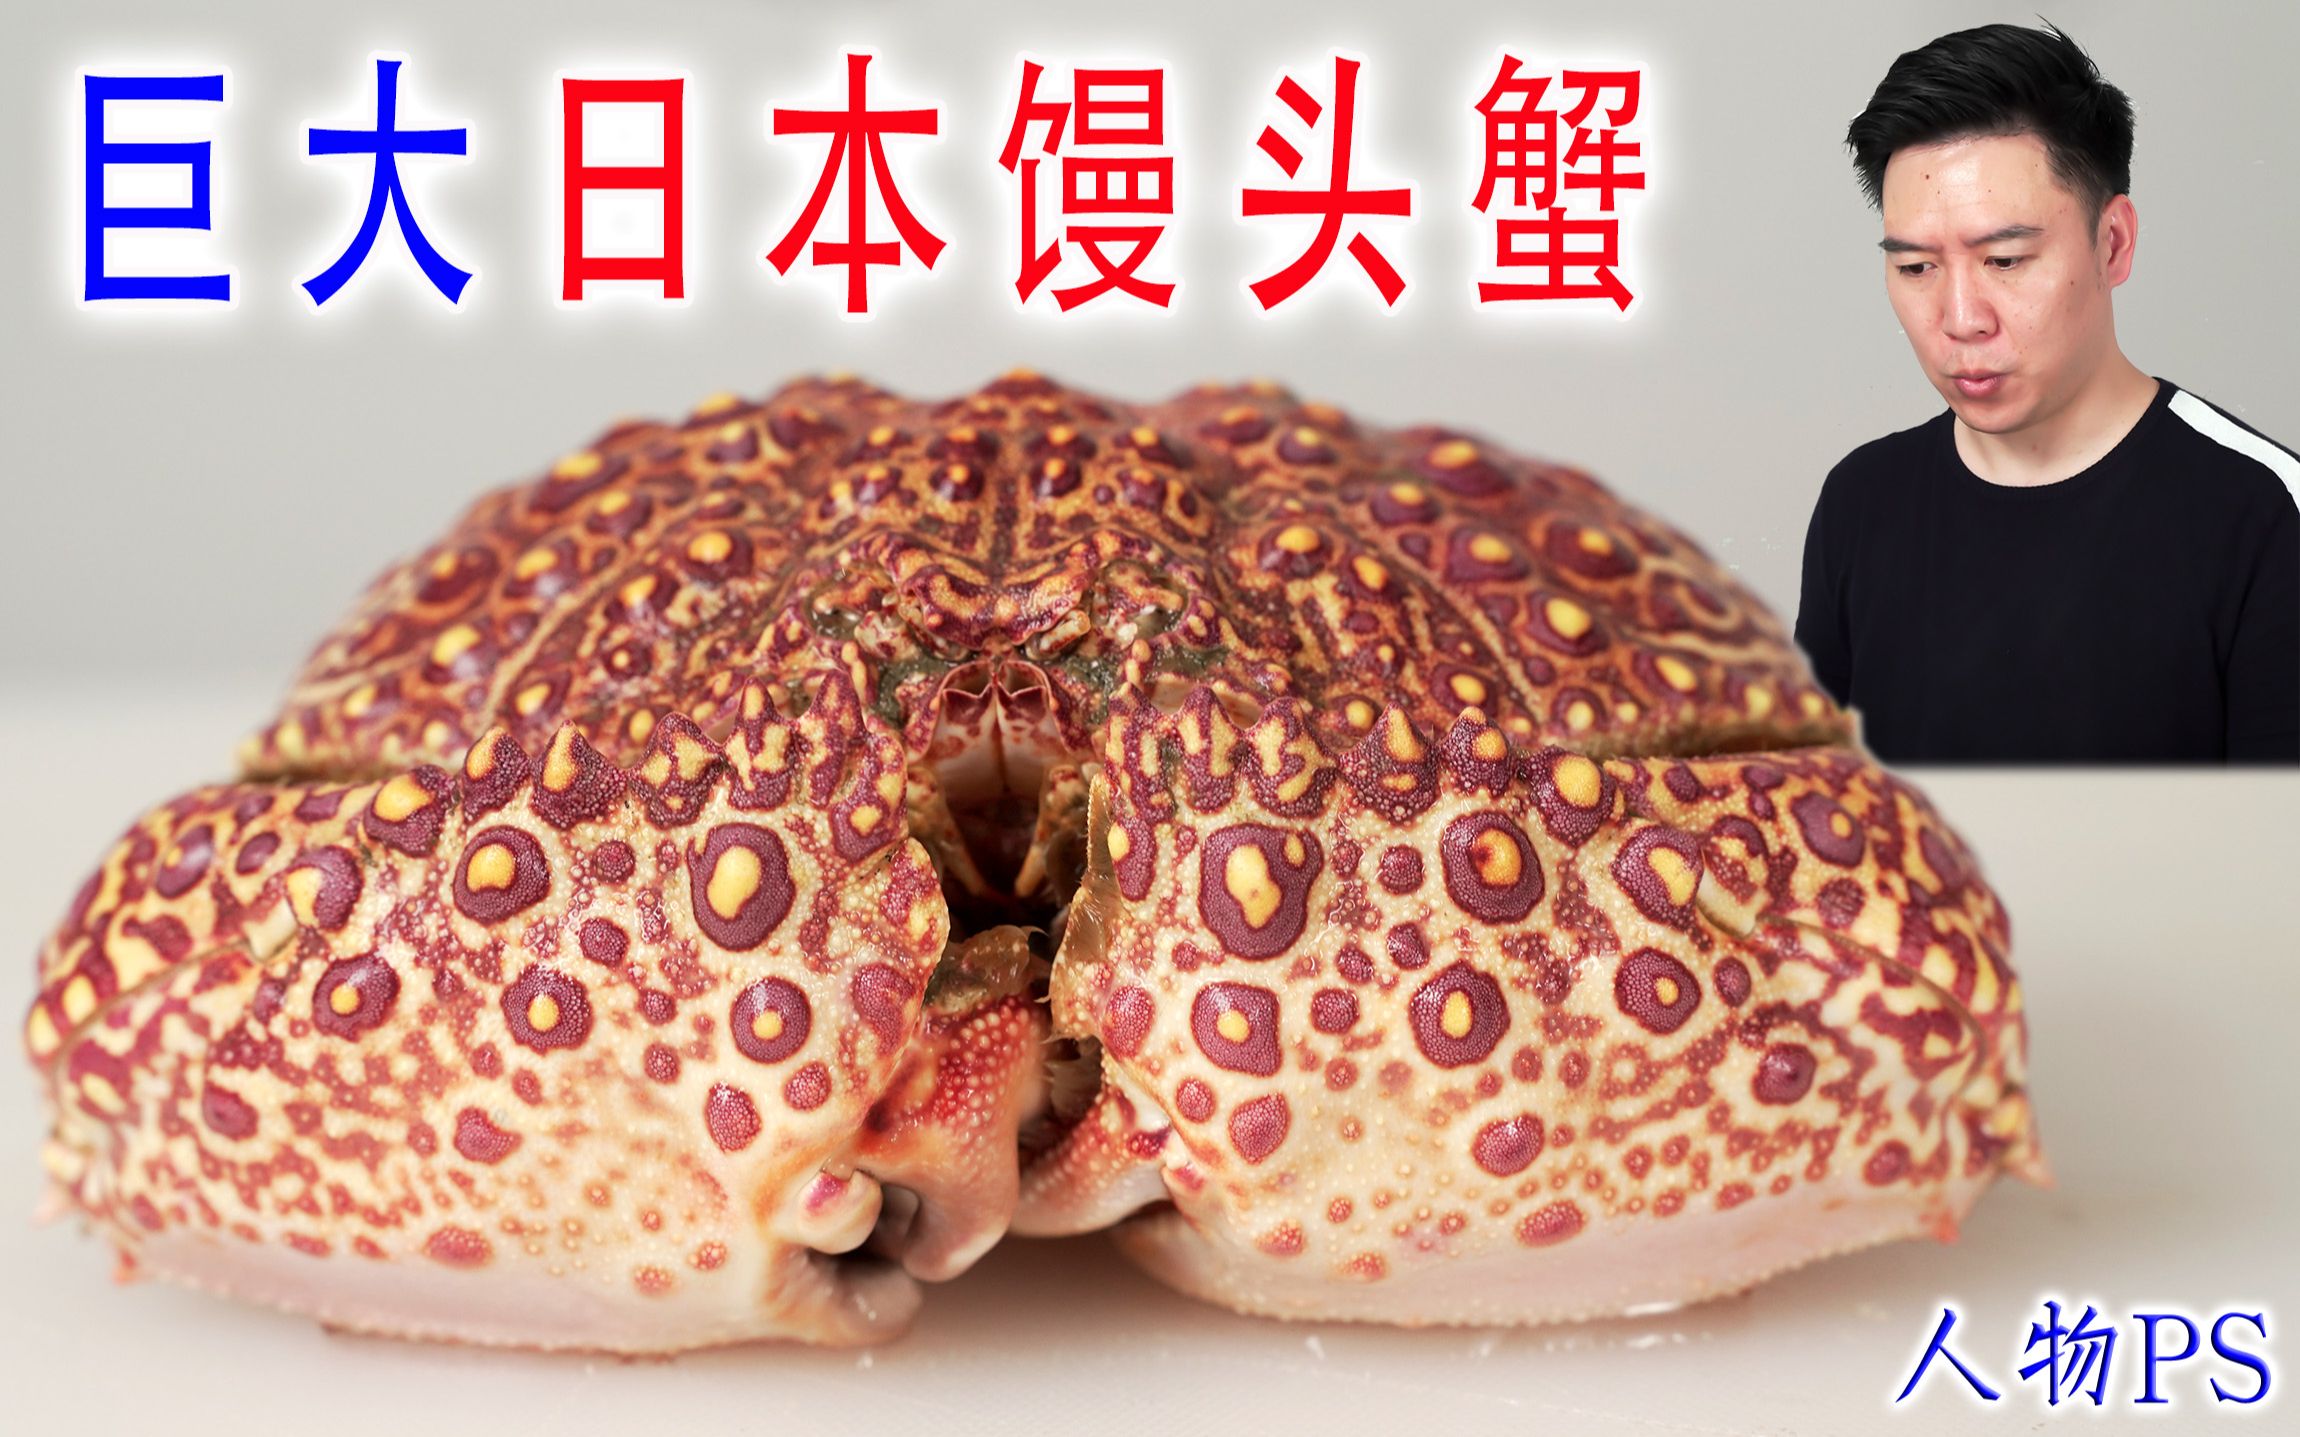 活的巨大日本馒头蟹，看似含有剧毒，却超级好吃